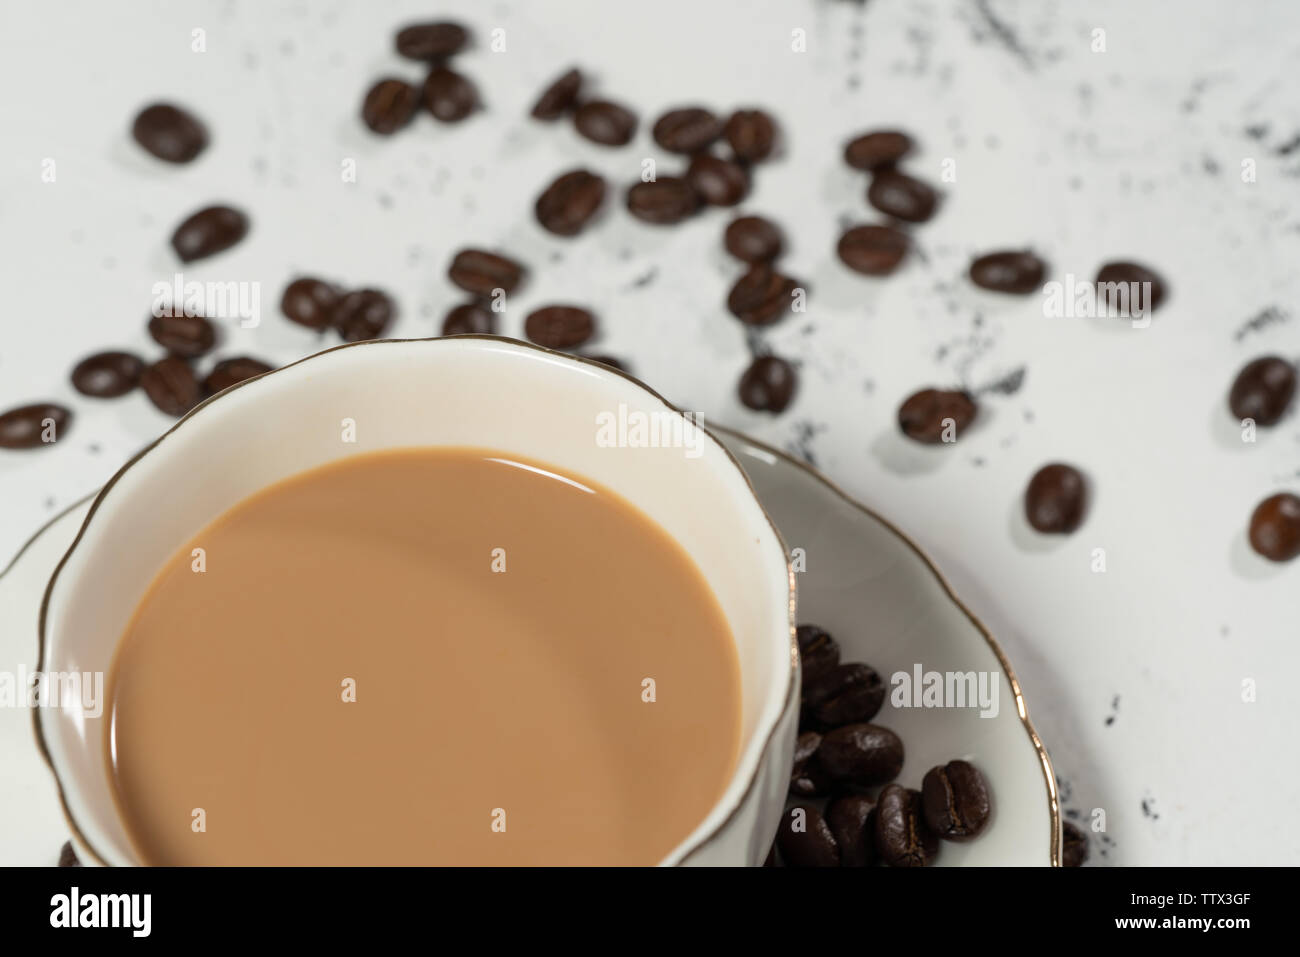 Le café et les grains de café sur fond blanc Banque D'Images